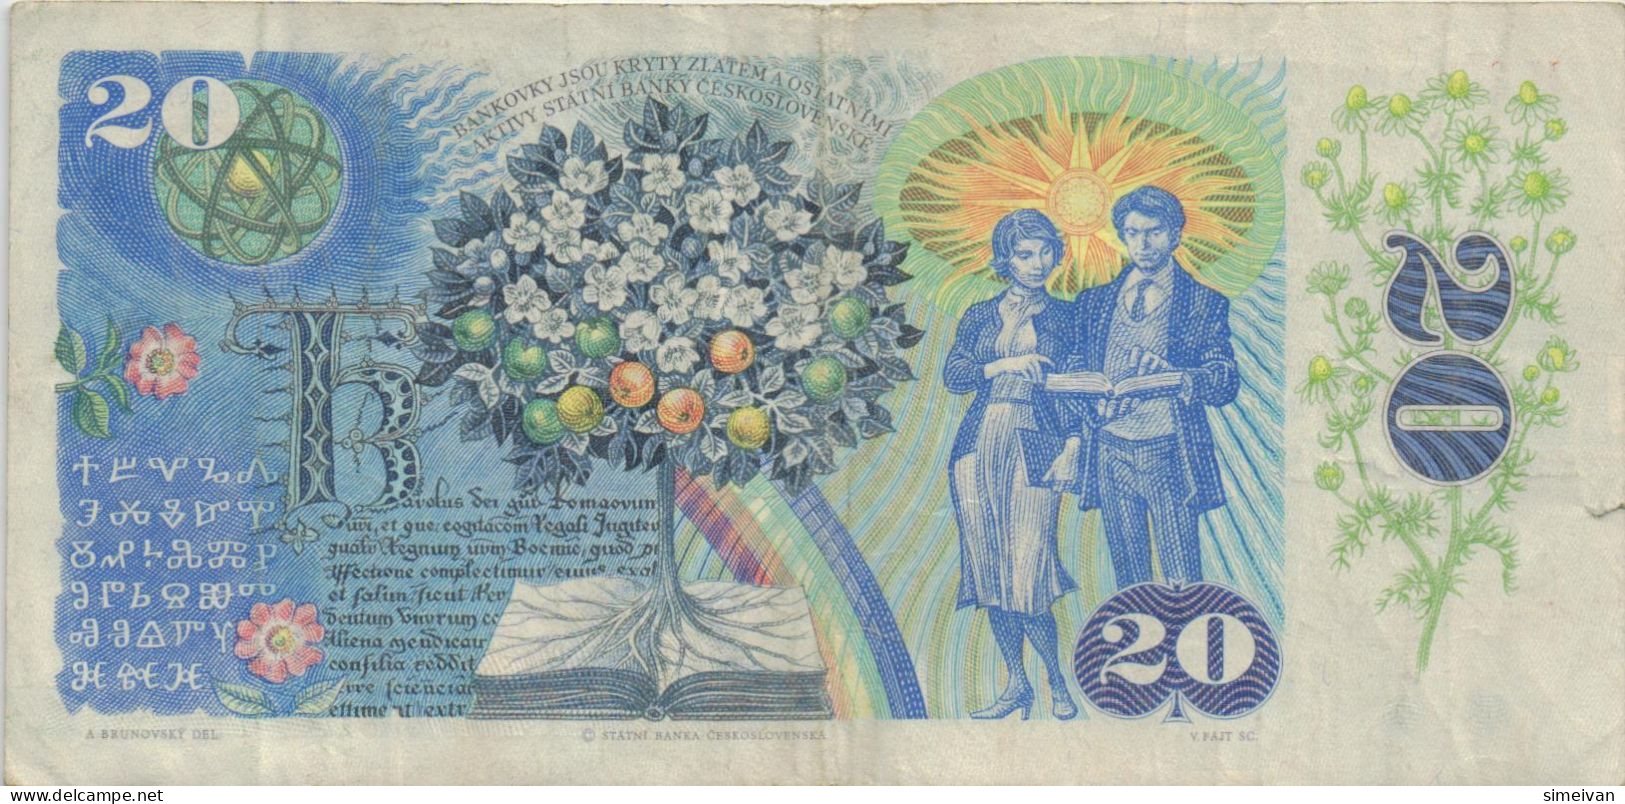 Czechoslovakia 20 Korun 1988 P-95b Banknote Europe Currency Tchécoslovaquie Tschechoslowakei #5257 - Checoslovaquia